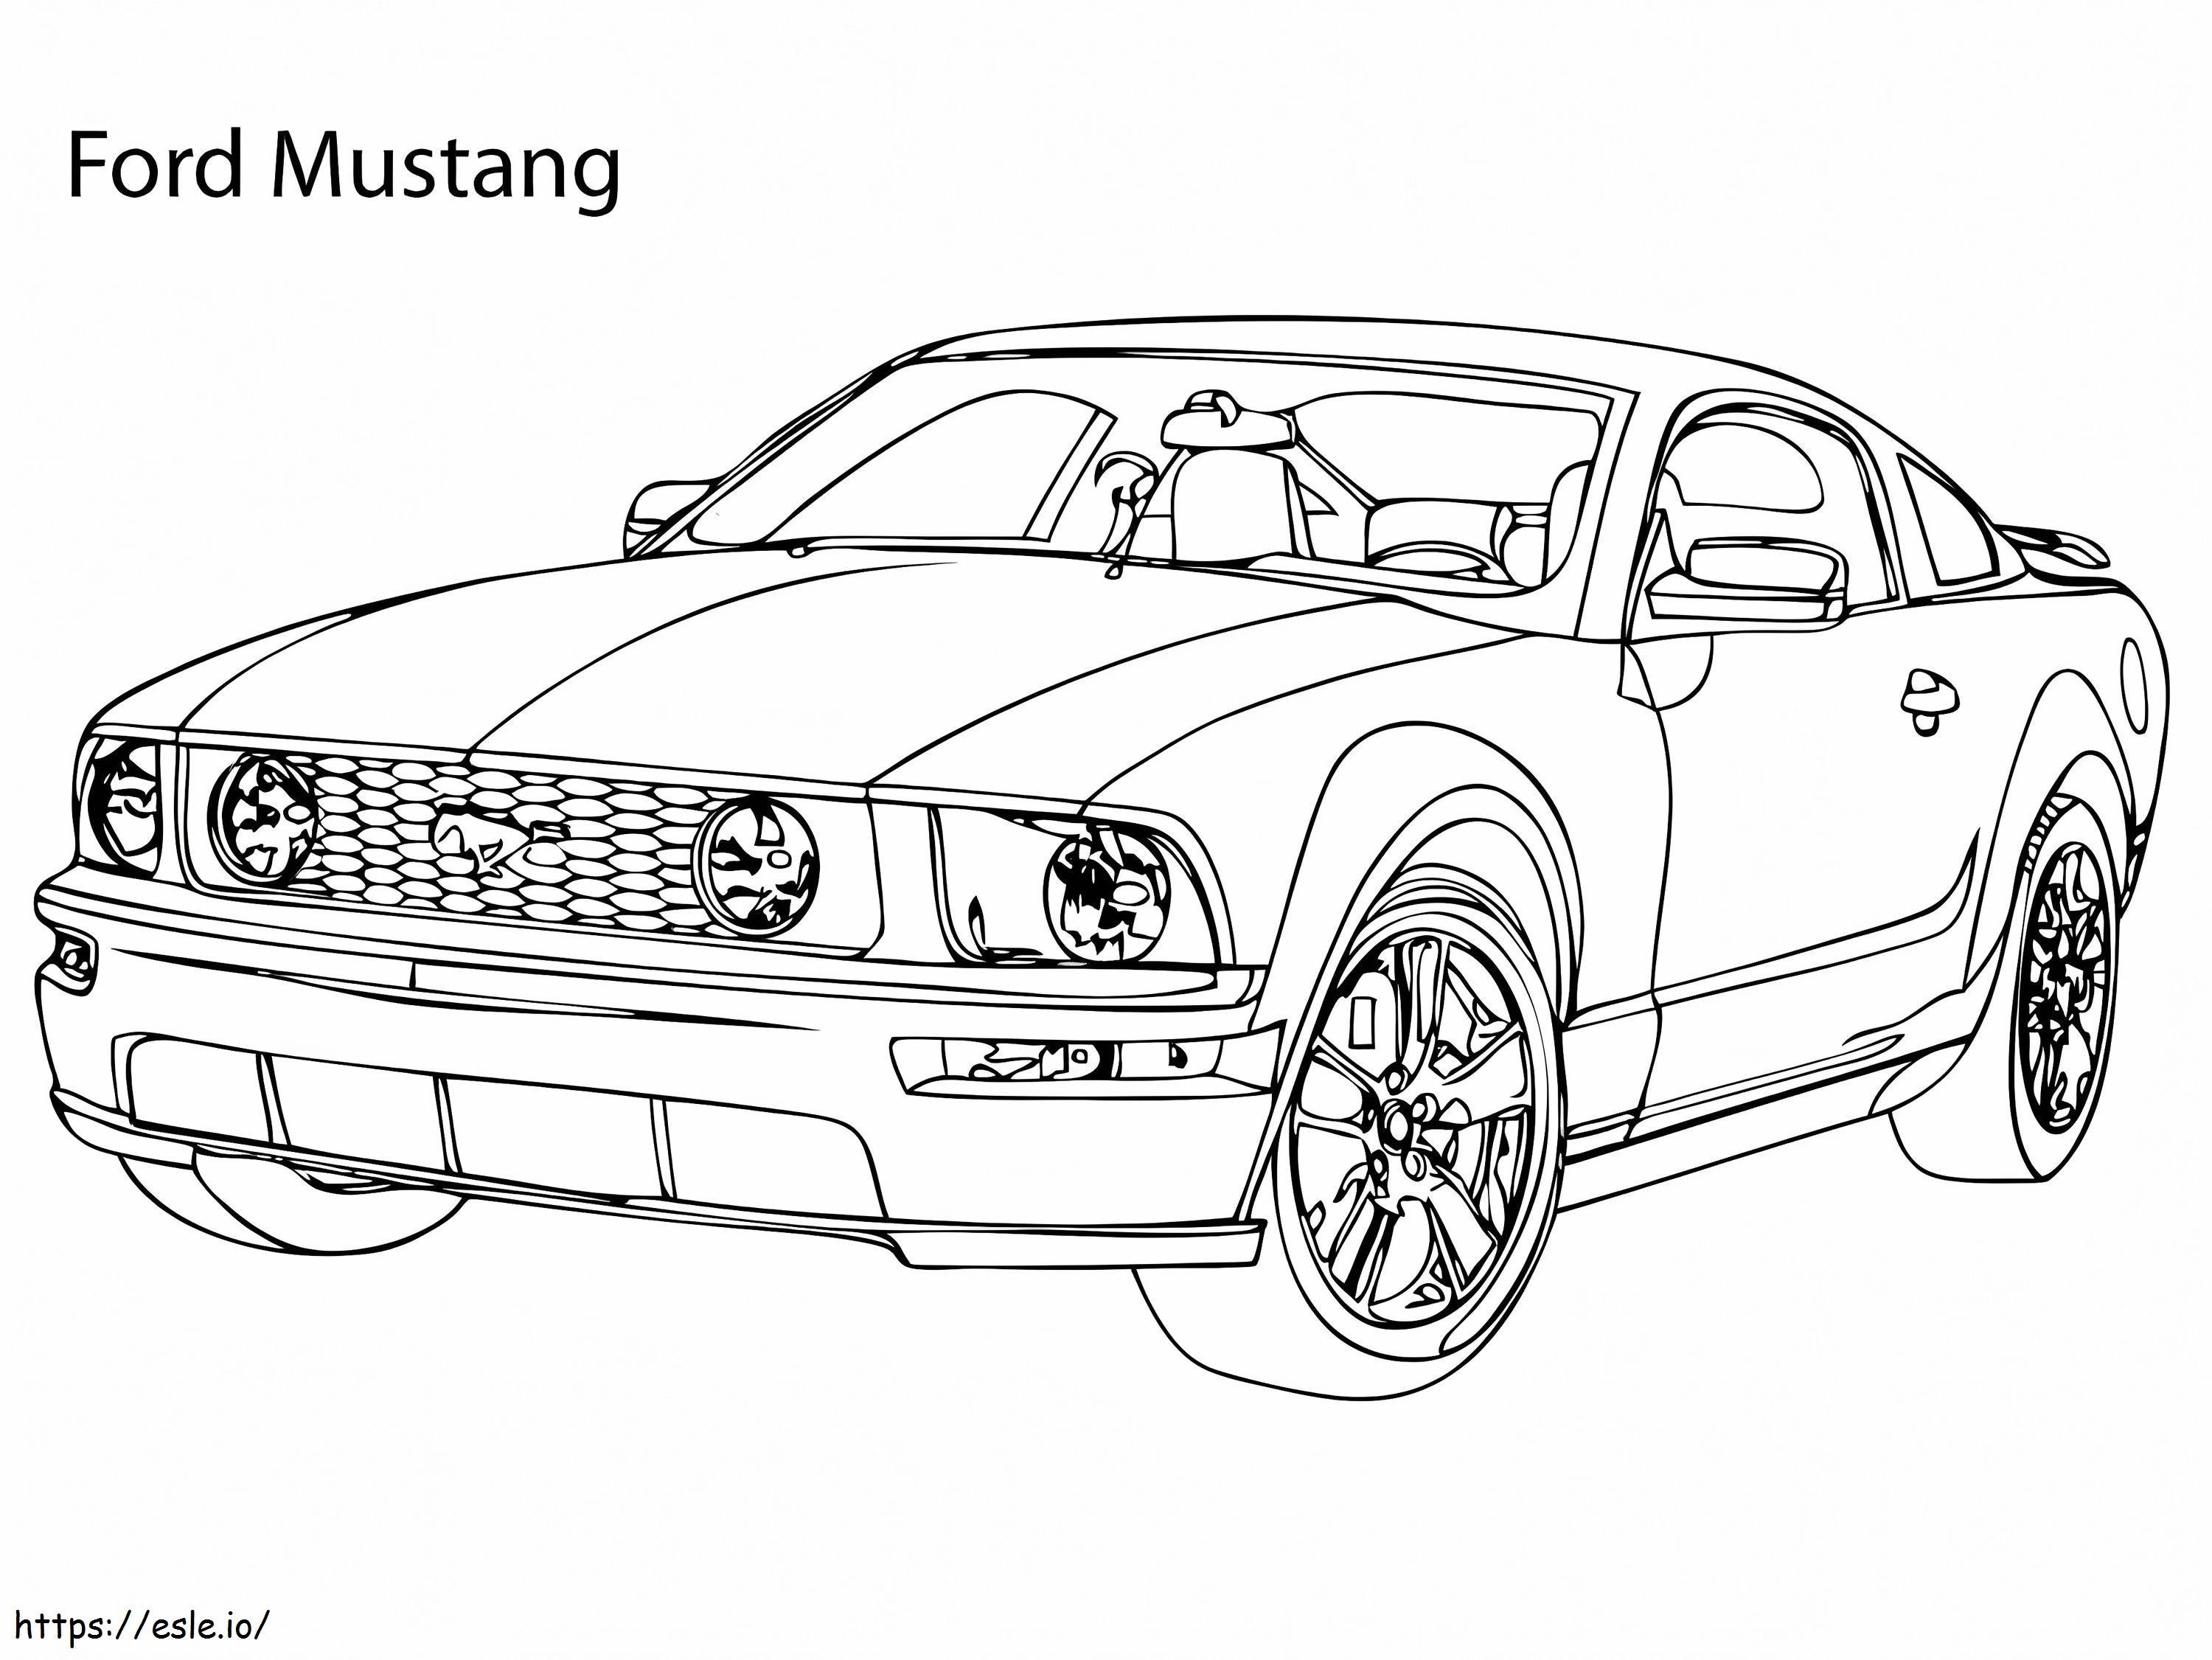 Supercarro Ford Mustang para colorir